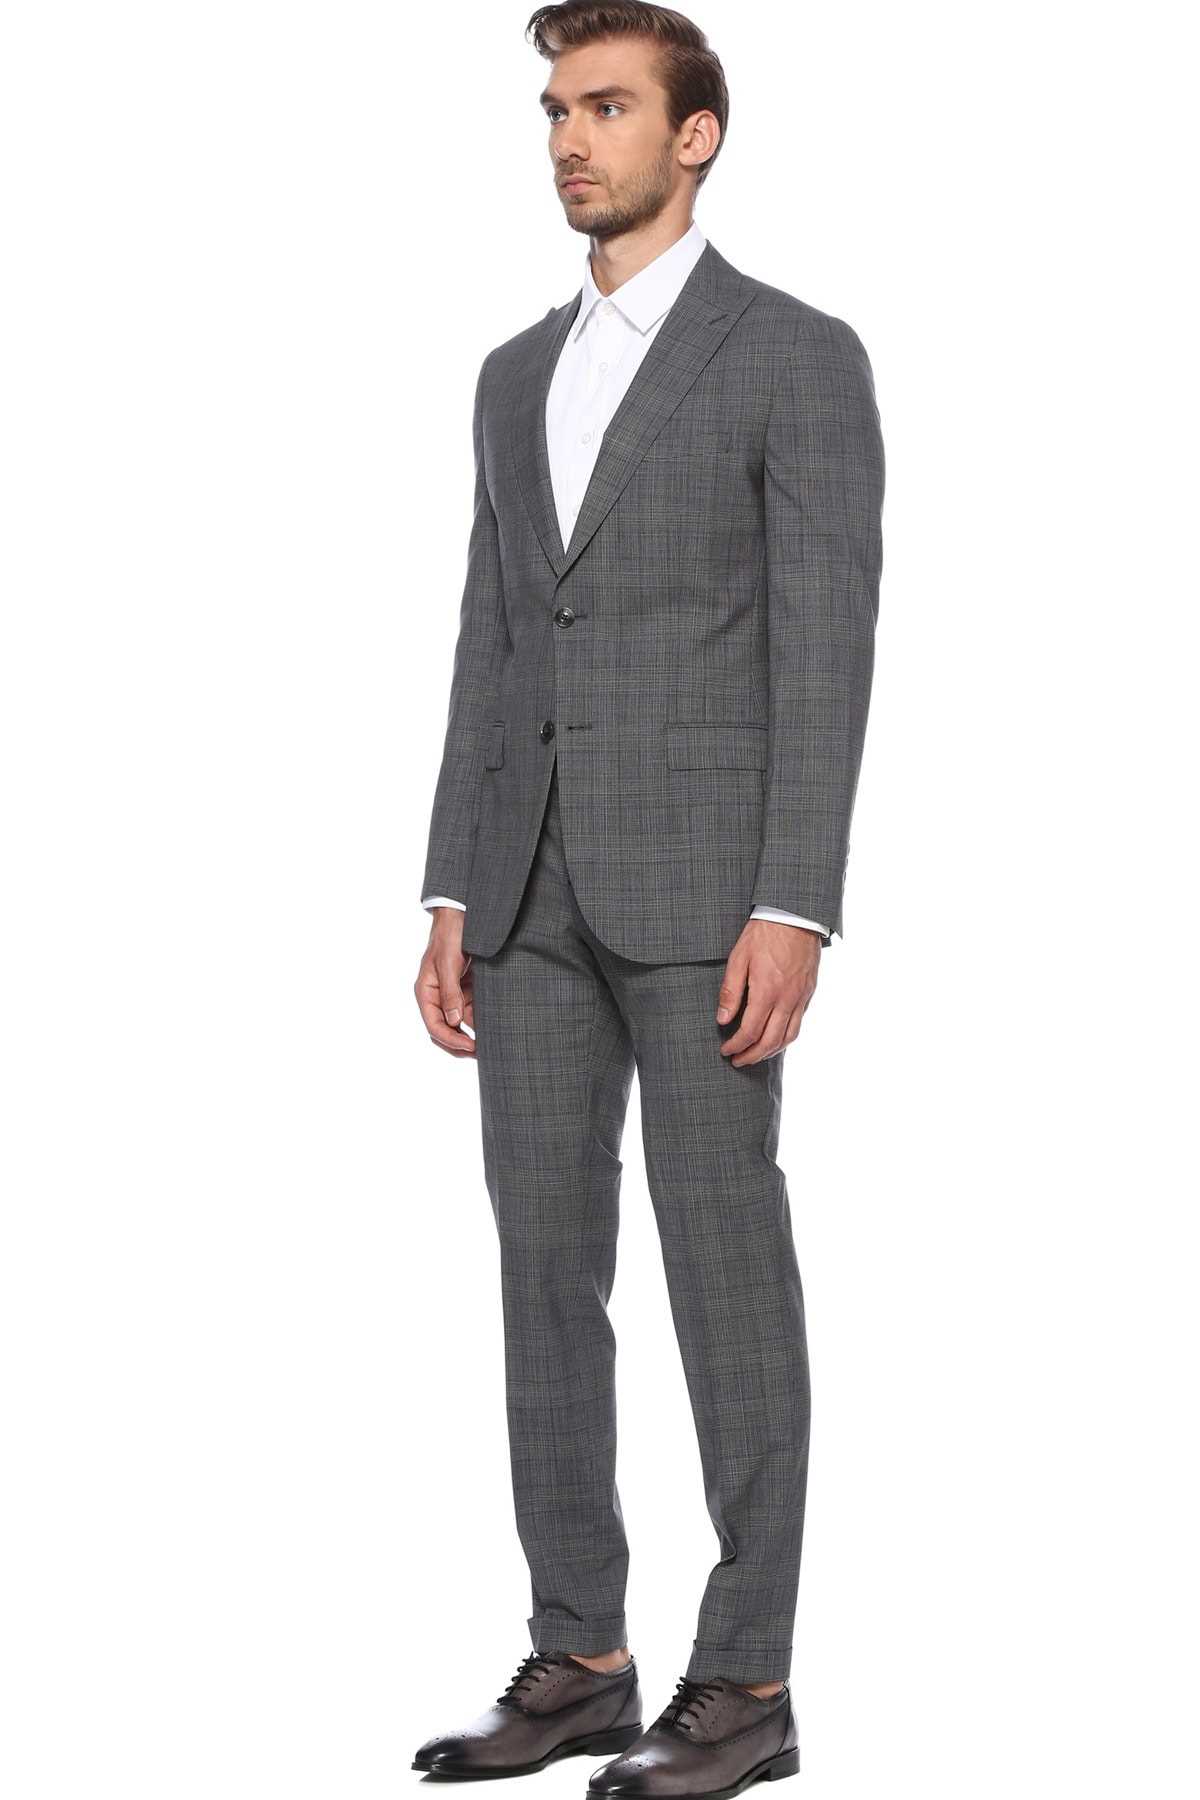 فروش انلاین کت شلوار مردانه مجلسی برند Network رنگ نقره ای کد ty57038844